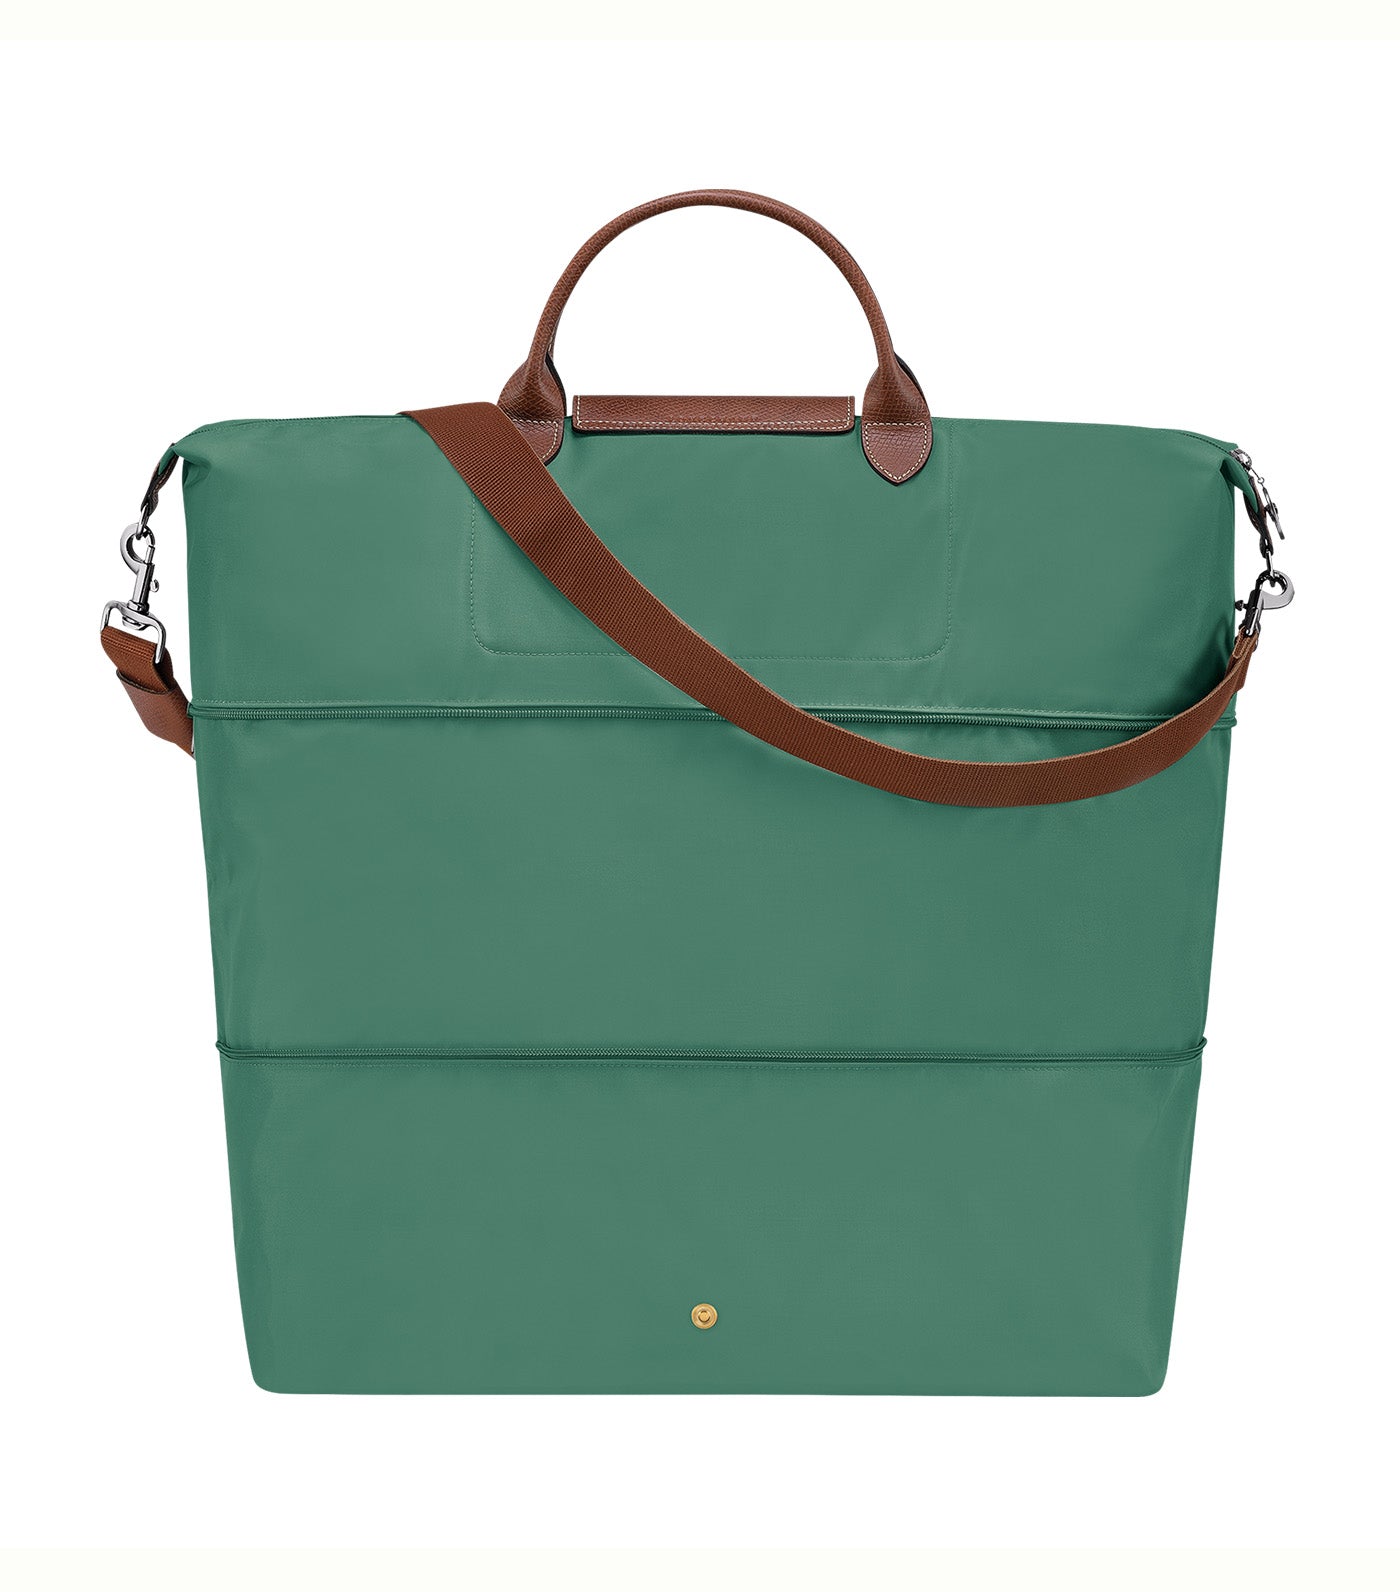 Le Pliage Original Travel Bag Expandable Sage